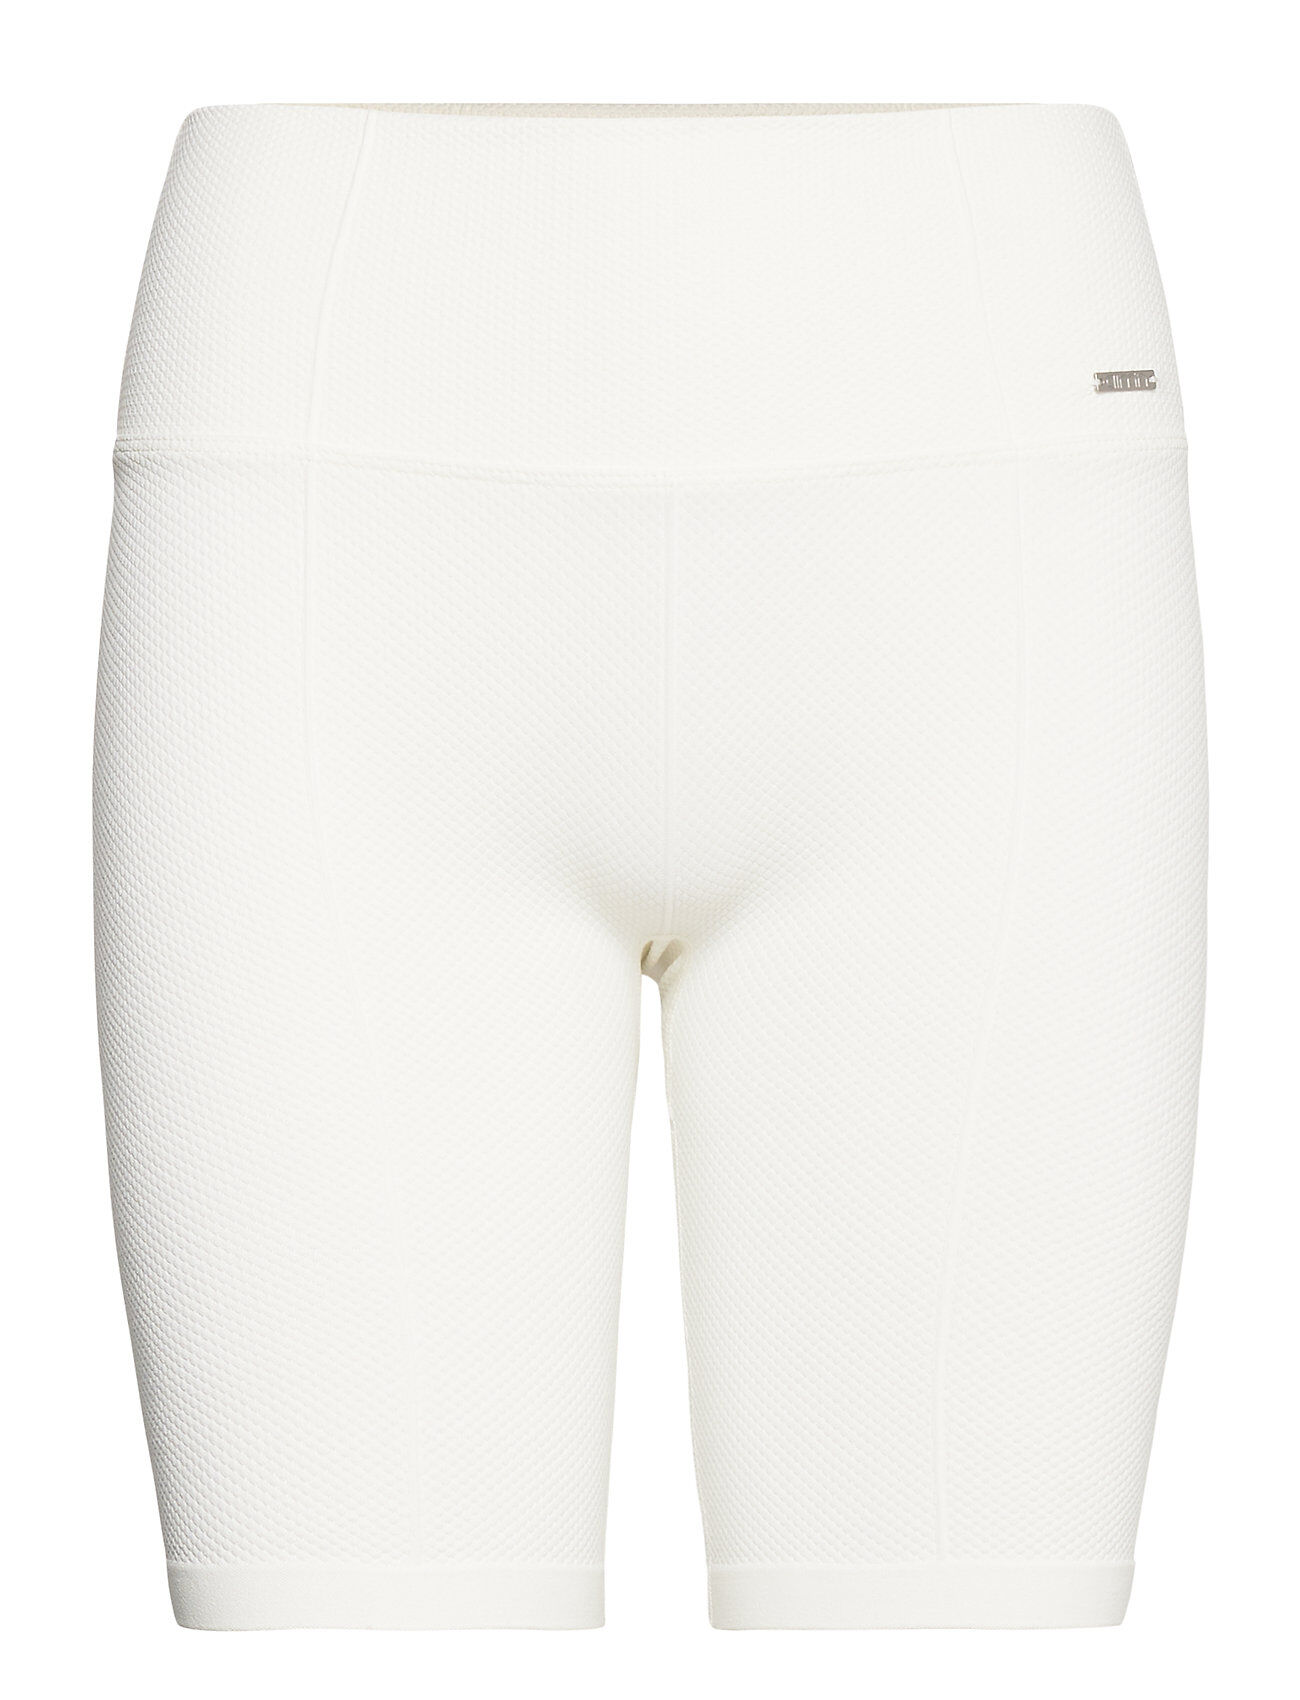 AIM'N Off-White Luxe Seamless Biker Shorts Shorts Sport Shorts Hvit AIM'N